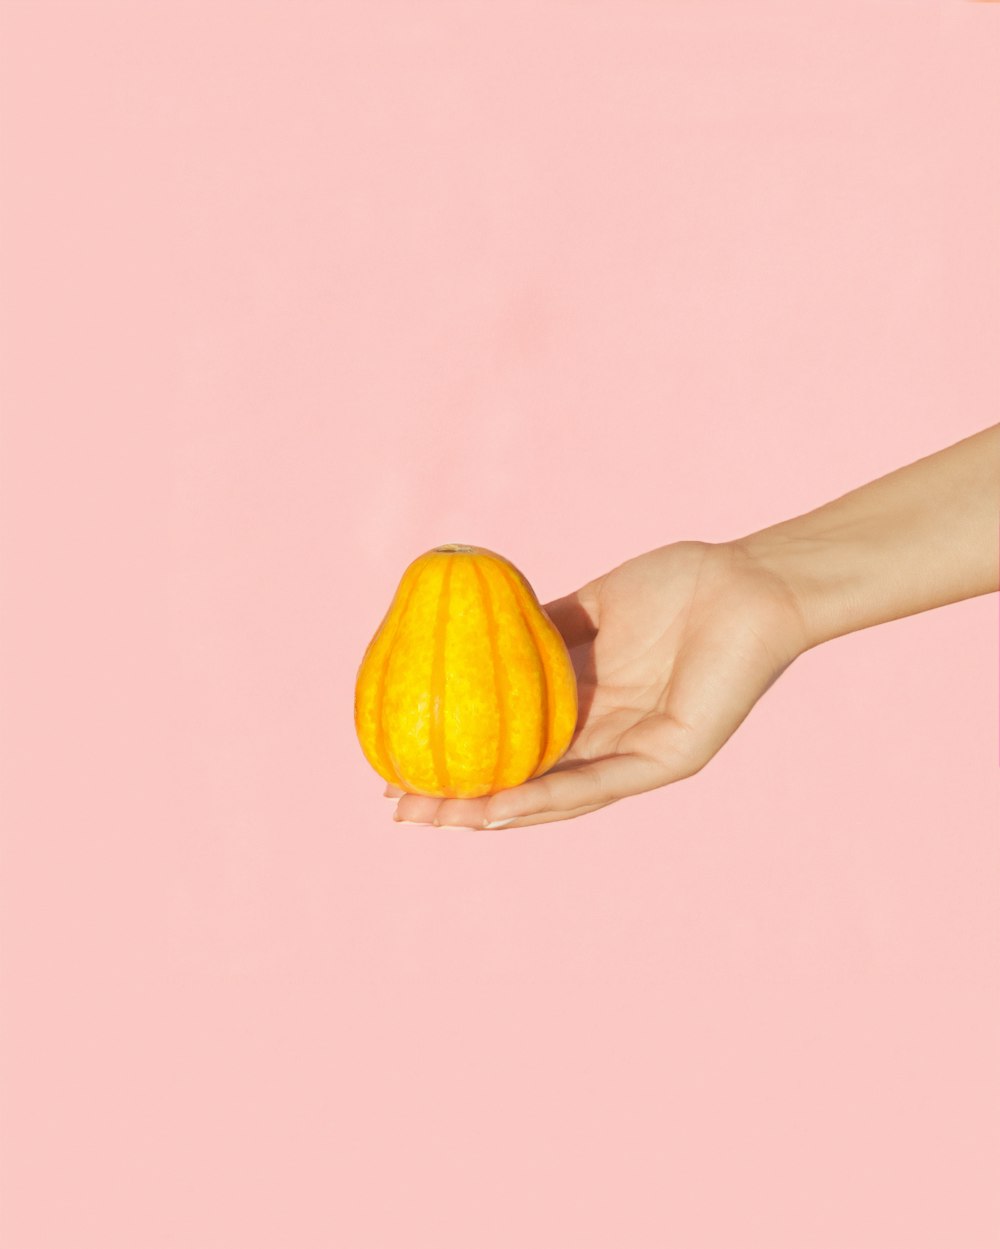 人の手のひらに洋ナシの形をした黄色い果実